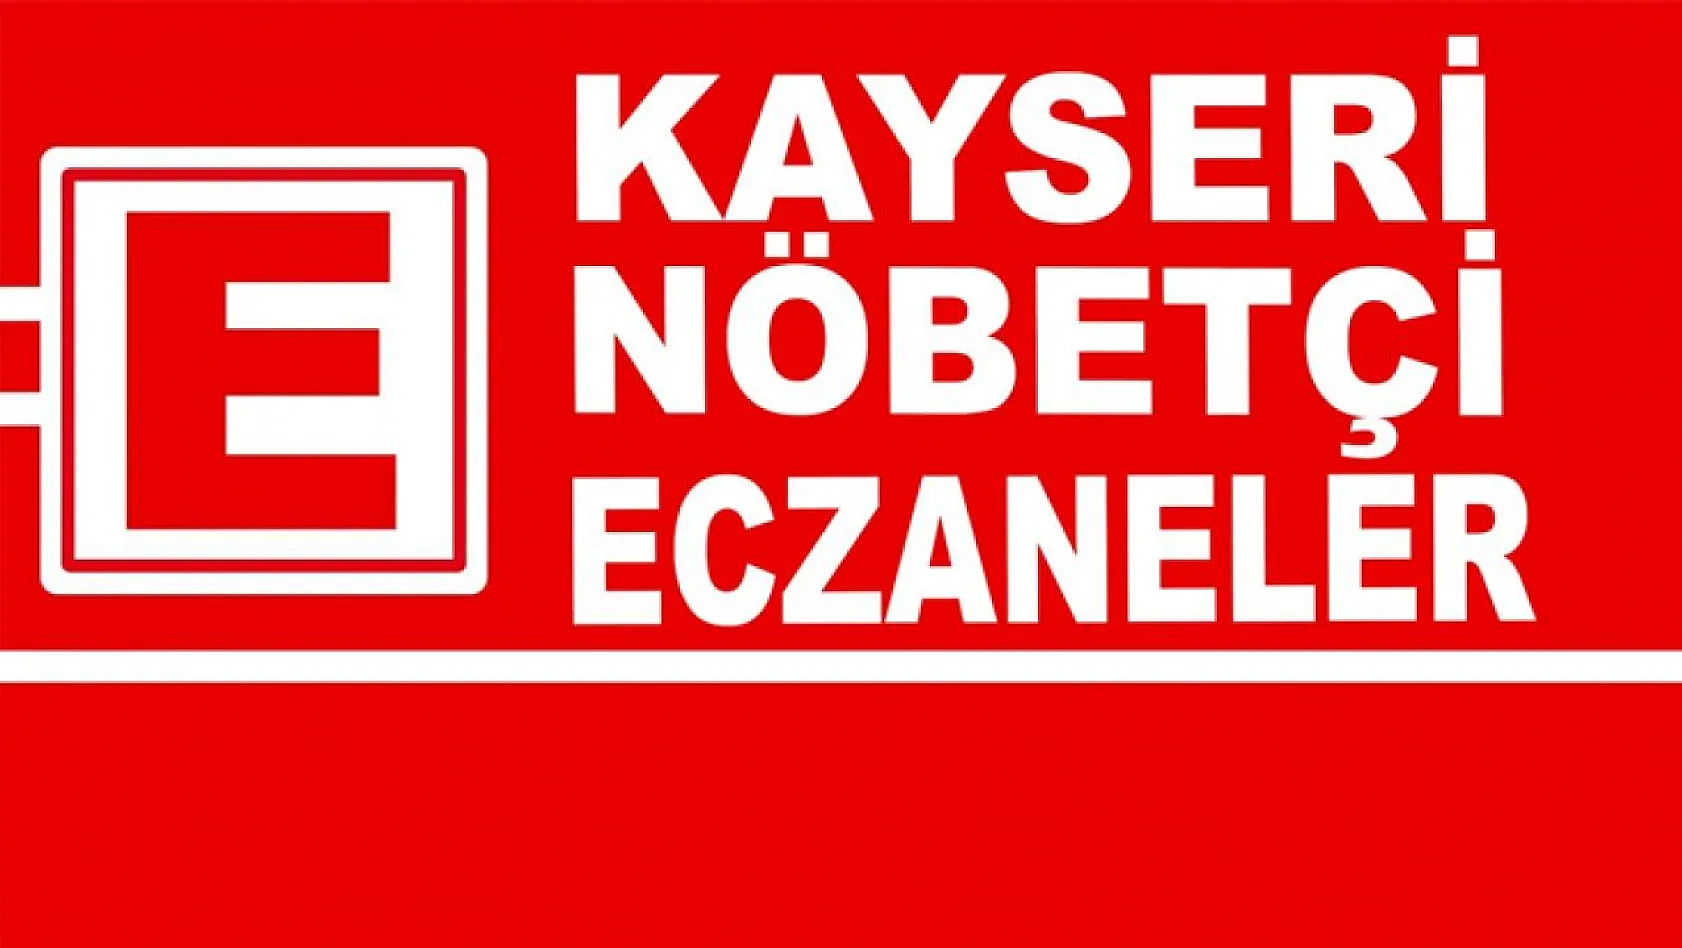 Kayseri'de Nöbetçi Eczaneler (16 Mayıs Salı)